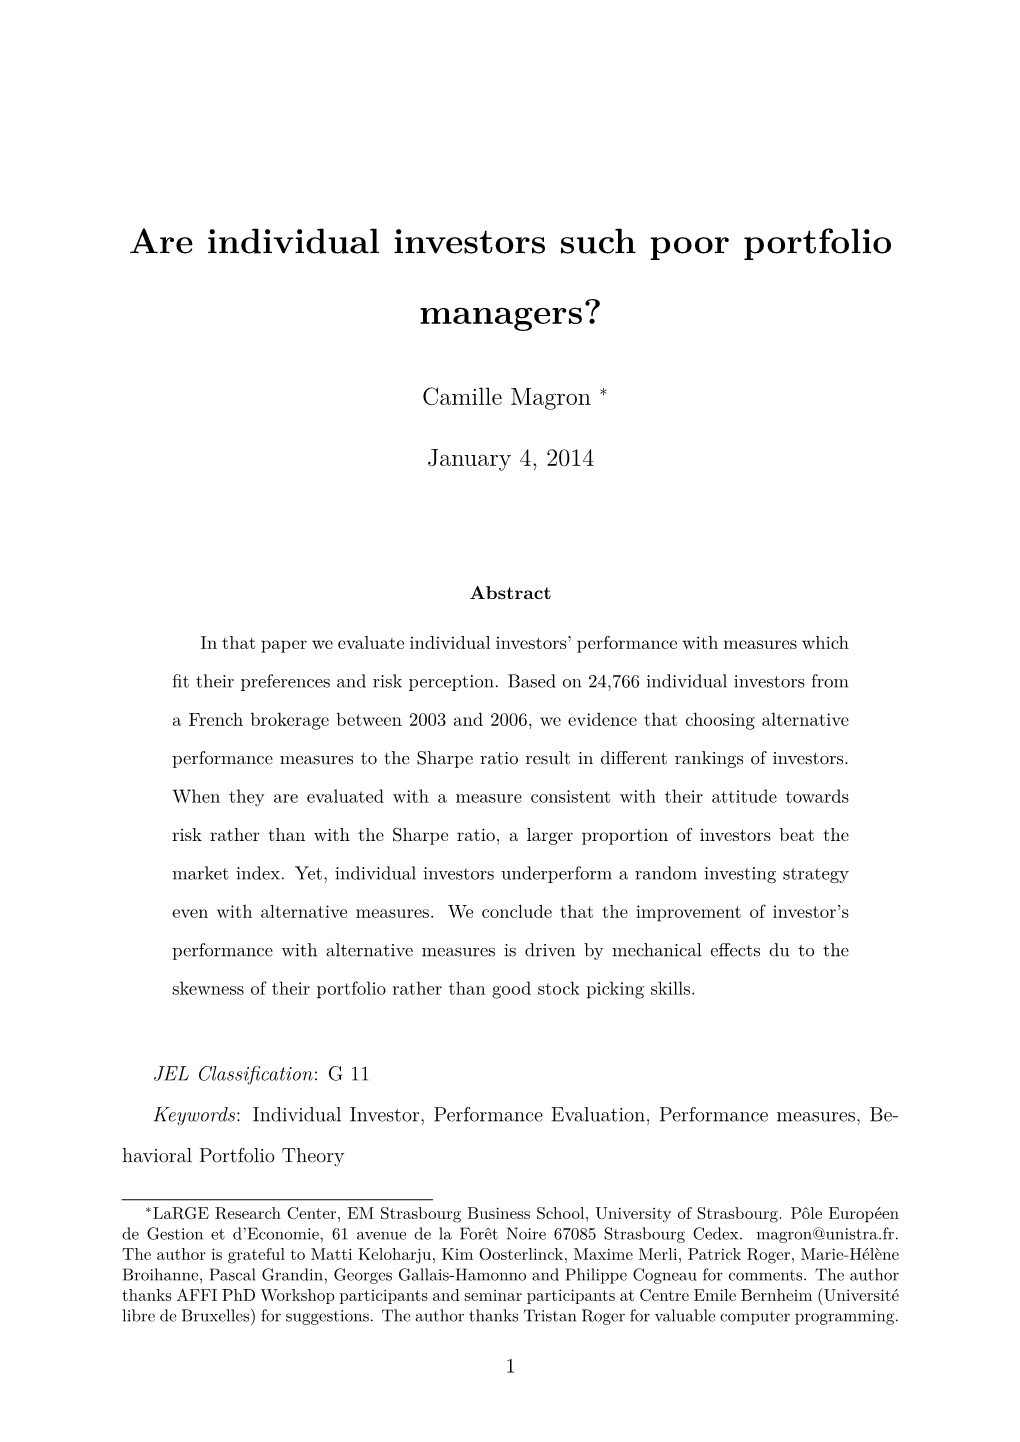 Are Individual Investors Such Poor Portfolio Managers?